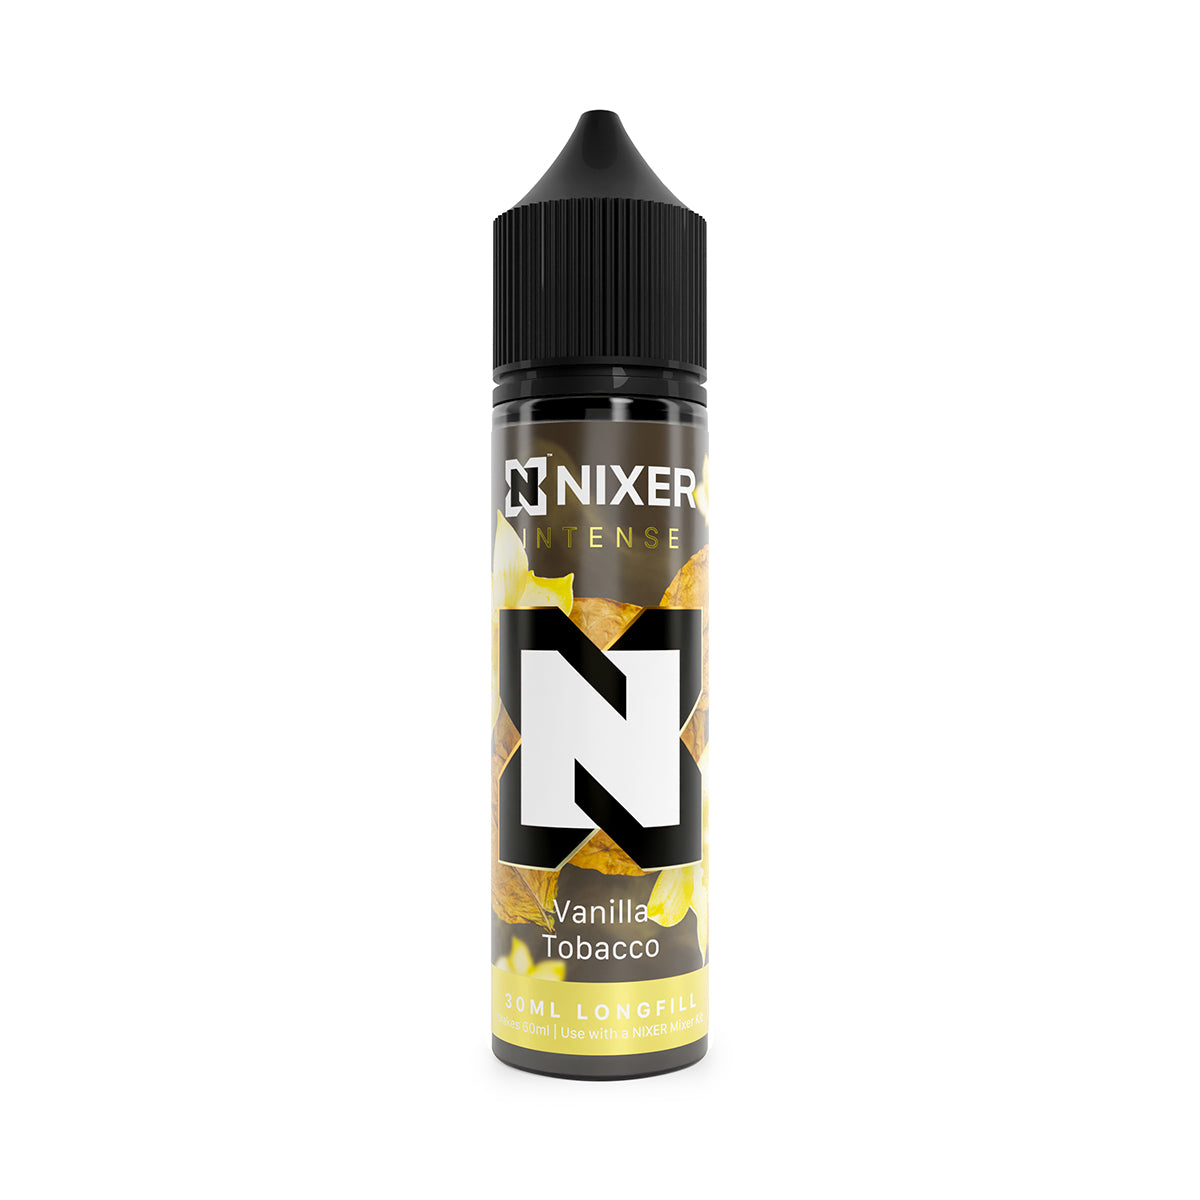 Nixer - Vanilla Tobacco - 30ml Longfill 